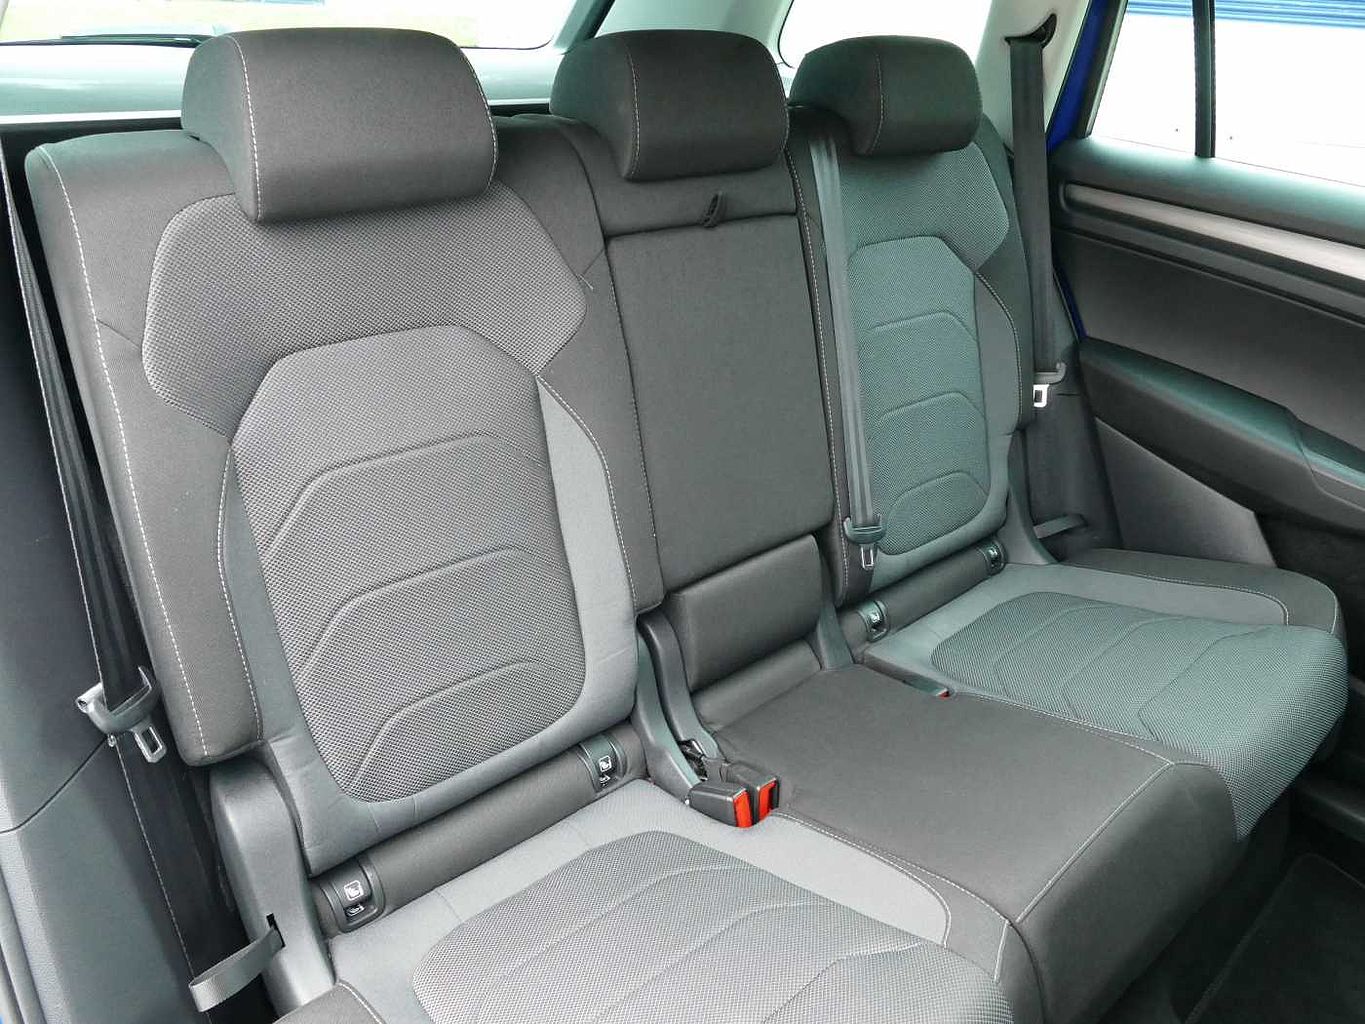 SKODA Kodiaq 2.0 TDI 150ps 4X4 SE (5 seats) DSG Automatic SUV